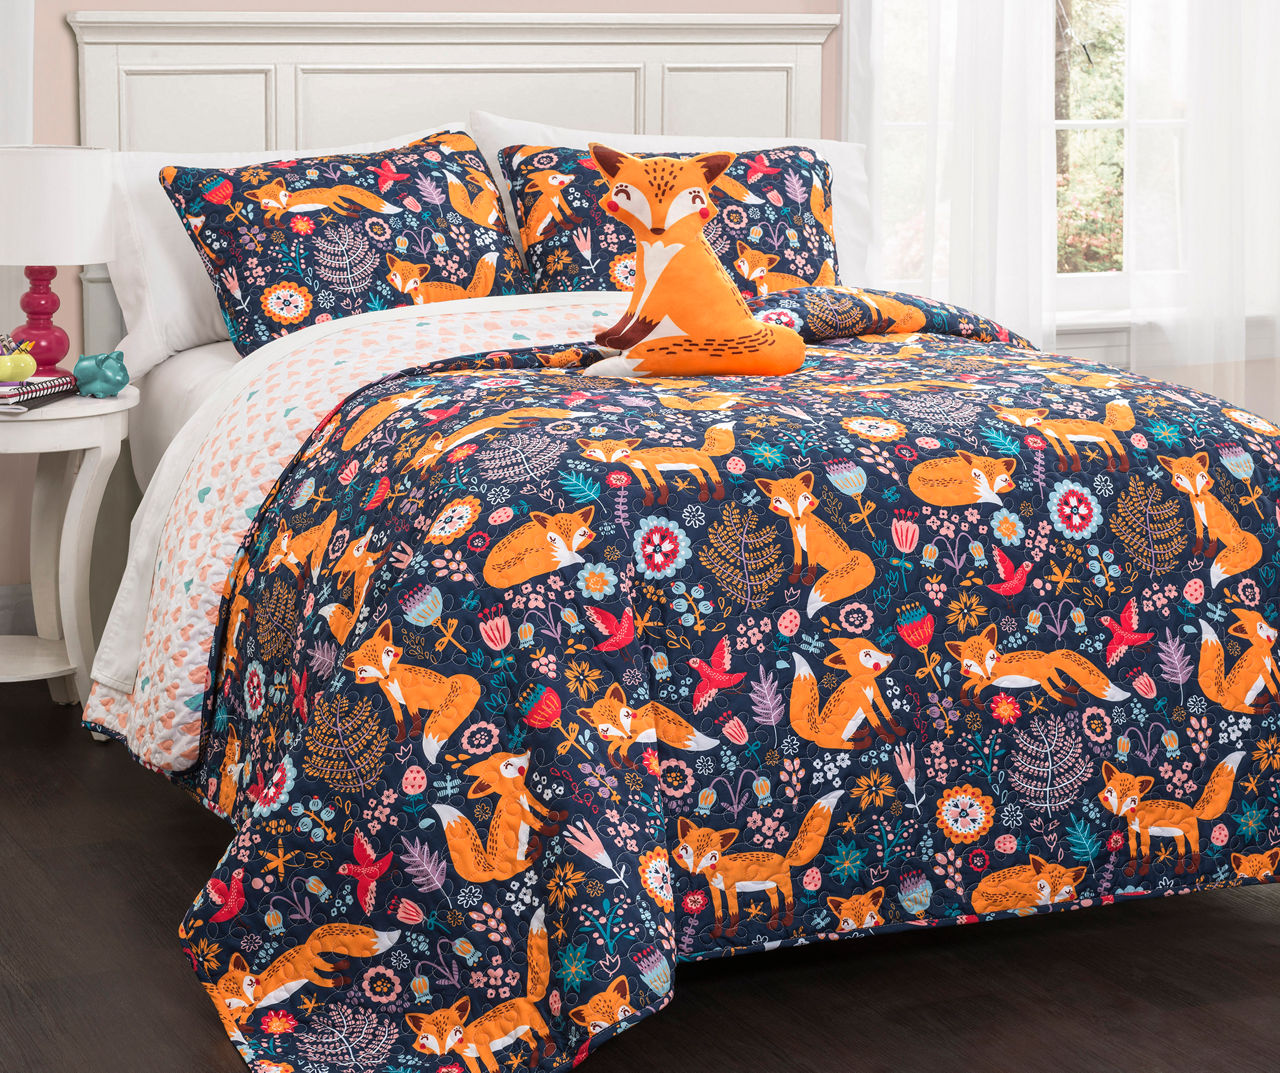 Pixie Fox Navy & Orange Floral Twin 3-Piece Quilt Set